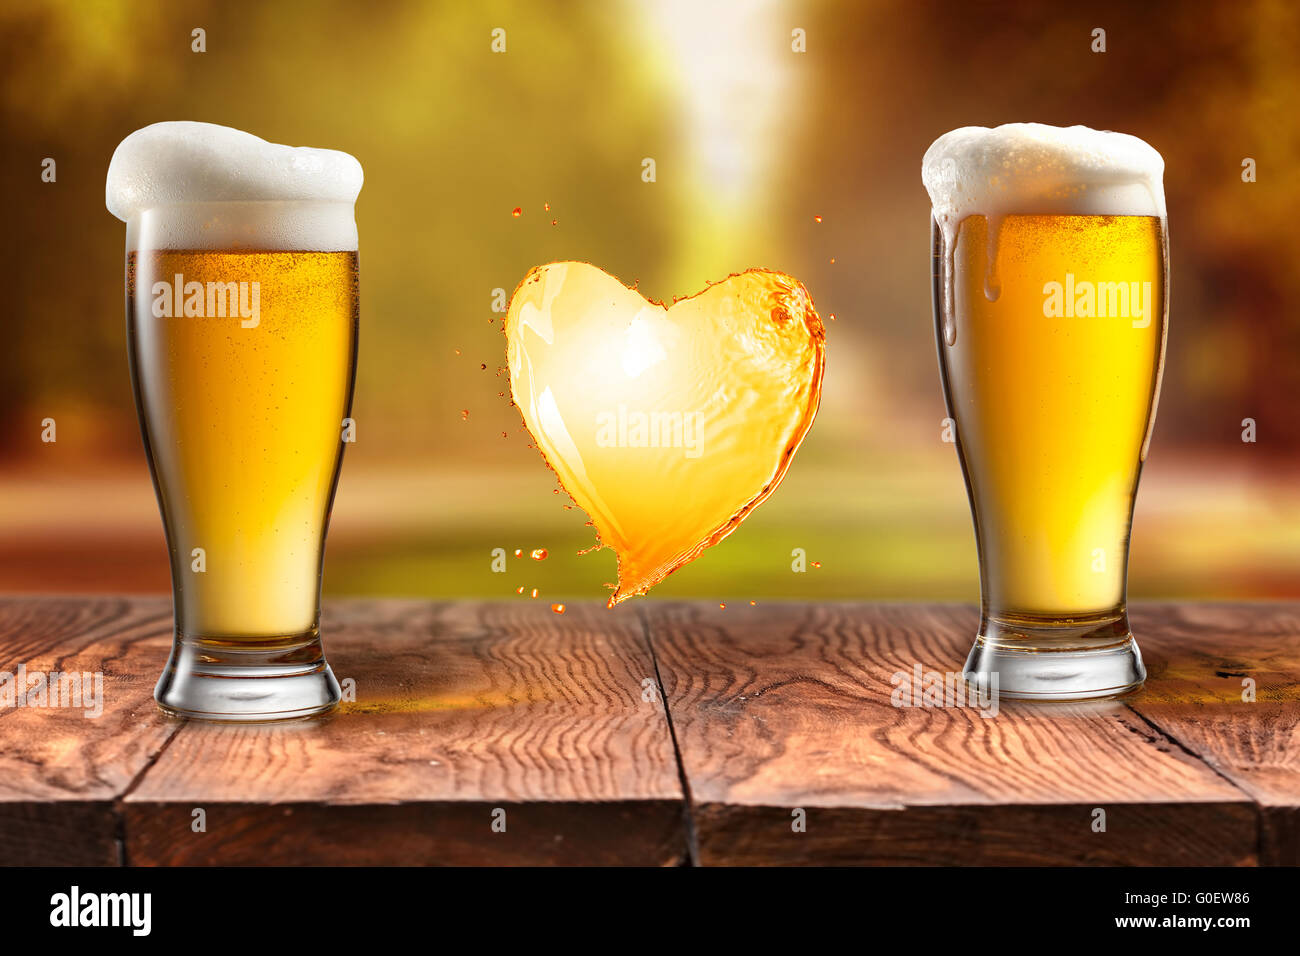 Liebe Bier. Bier im Glas mit Herz Splash auf Holztisch wieder  Stockfotografie - Alamy